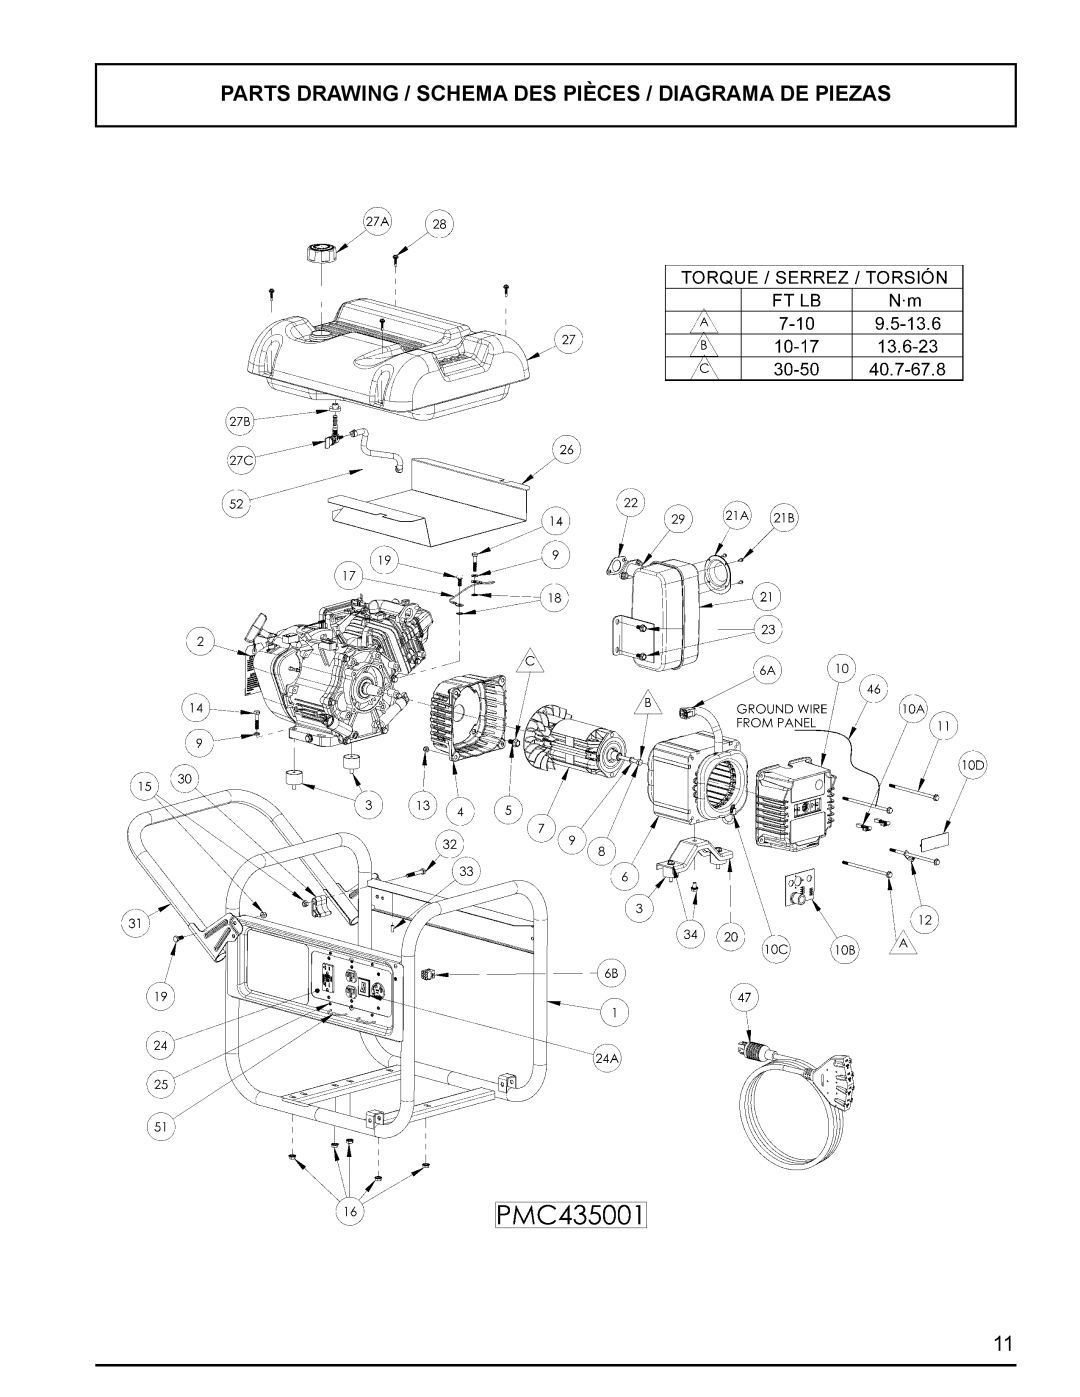 Powermate PMC435001 manual Parts Drawing / Schema Des Pièces / Diagrama De Piezas 